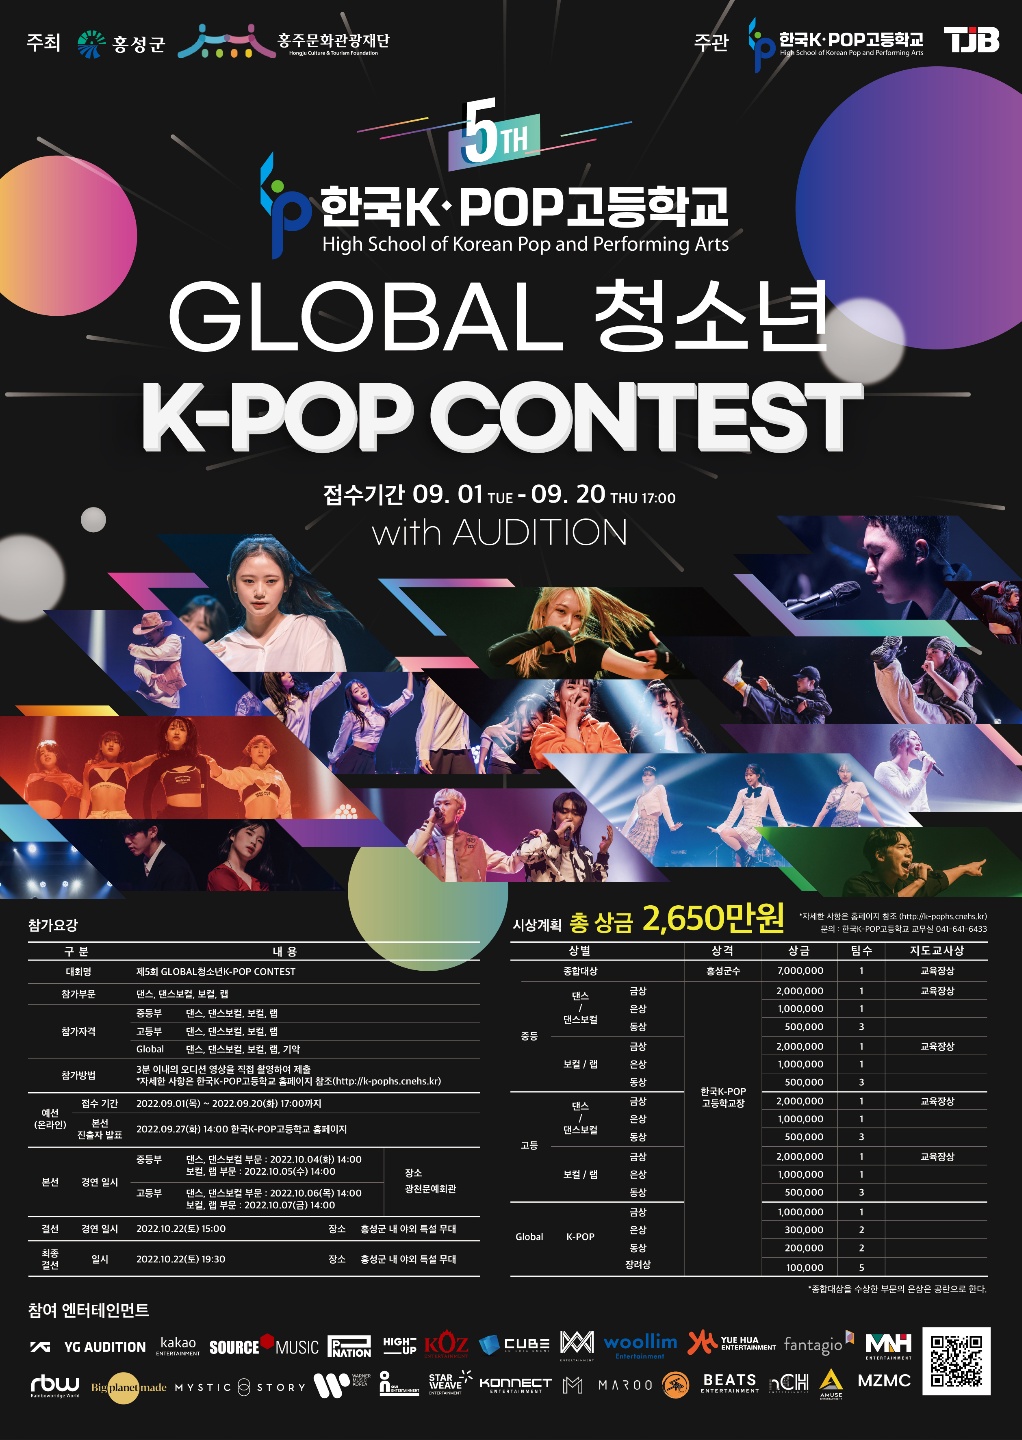 [일반] 제5회 글로벌 청소년 K-POP 콘테스트의 첨부이미지 1